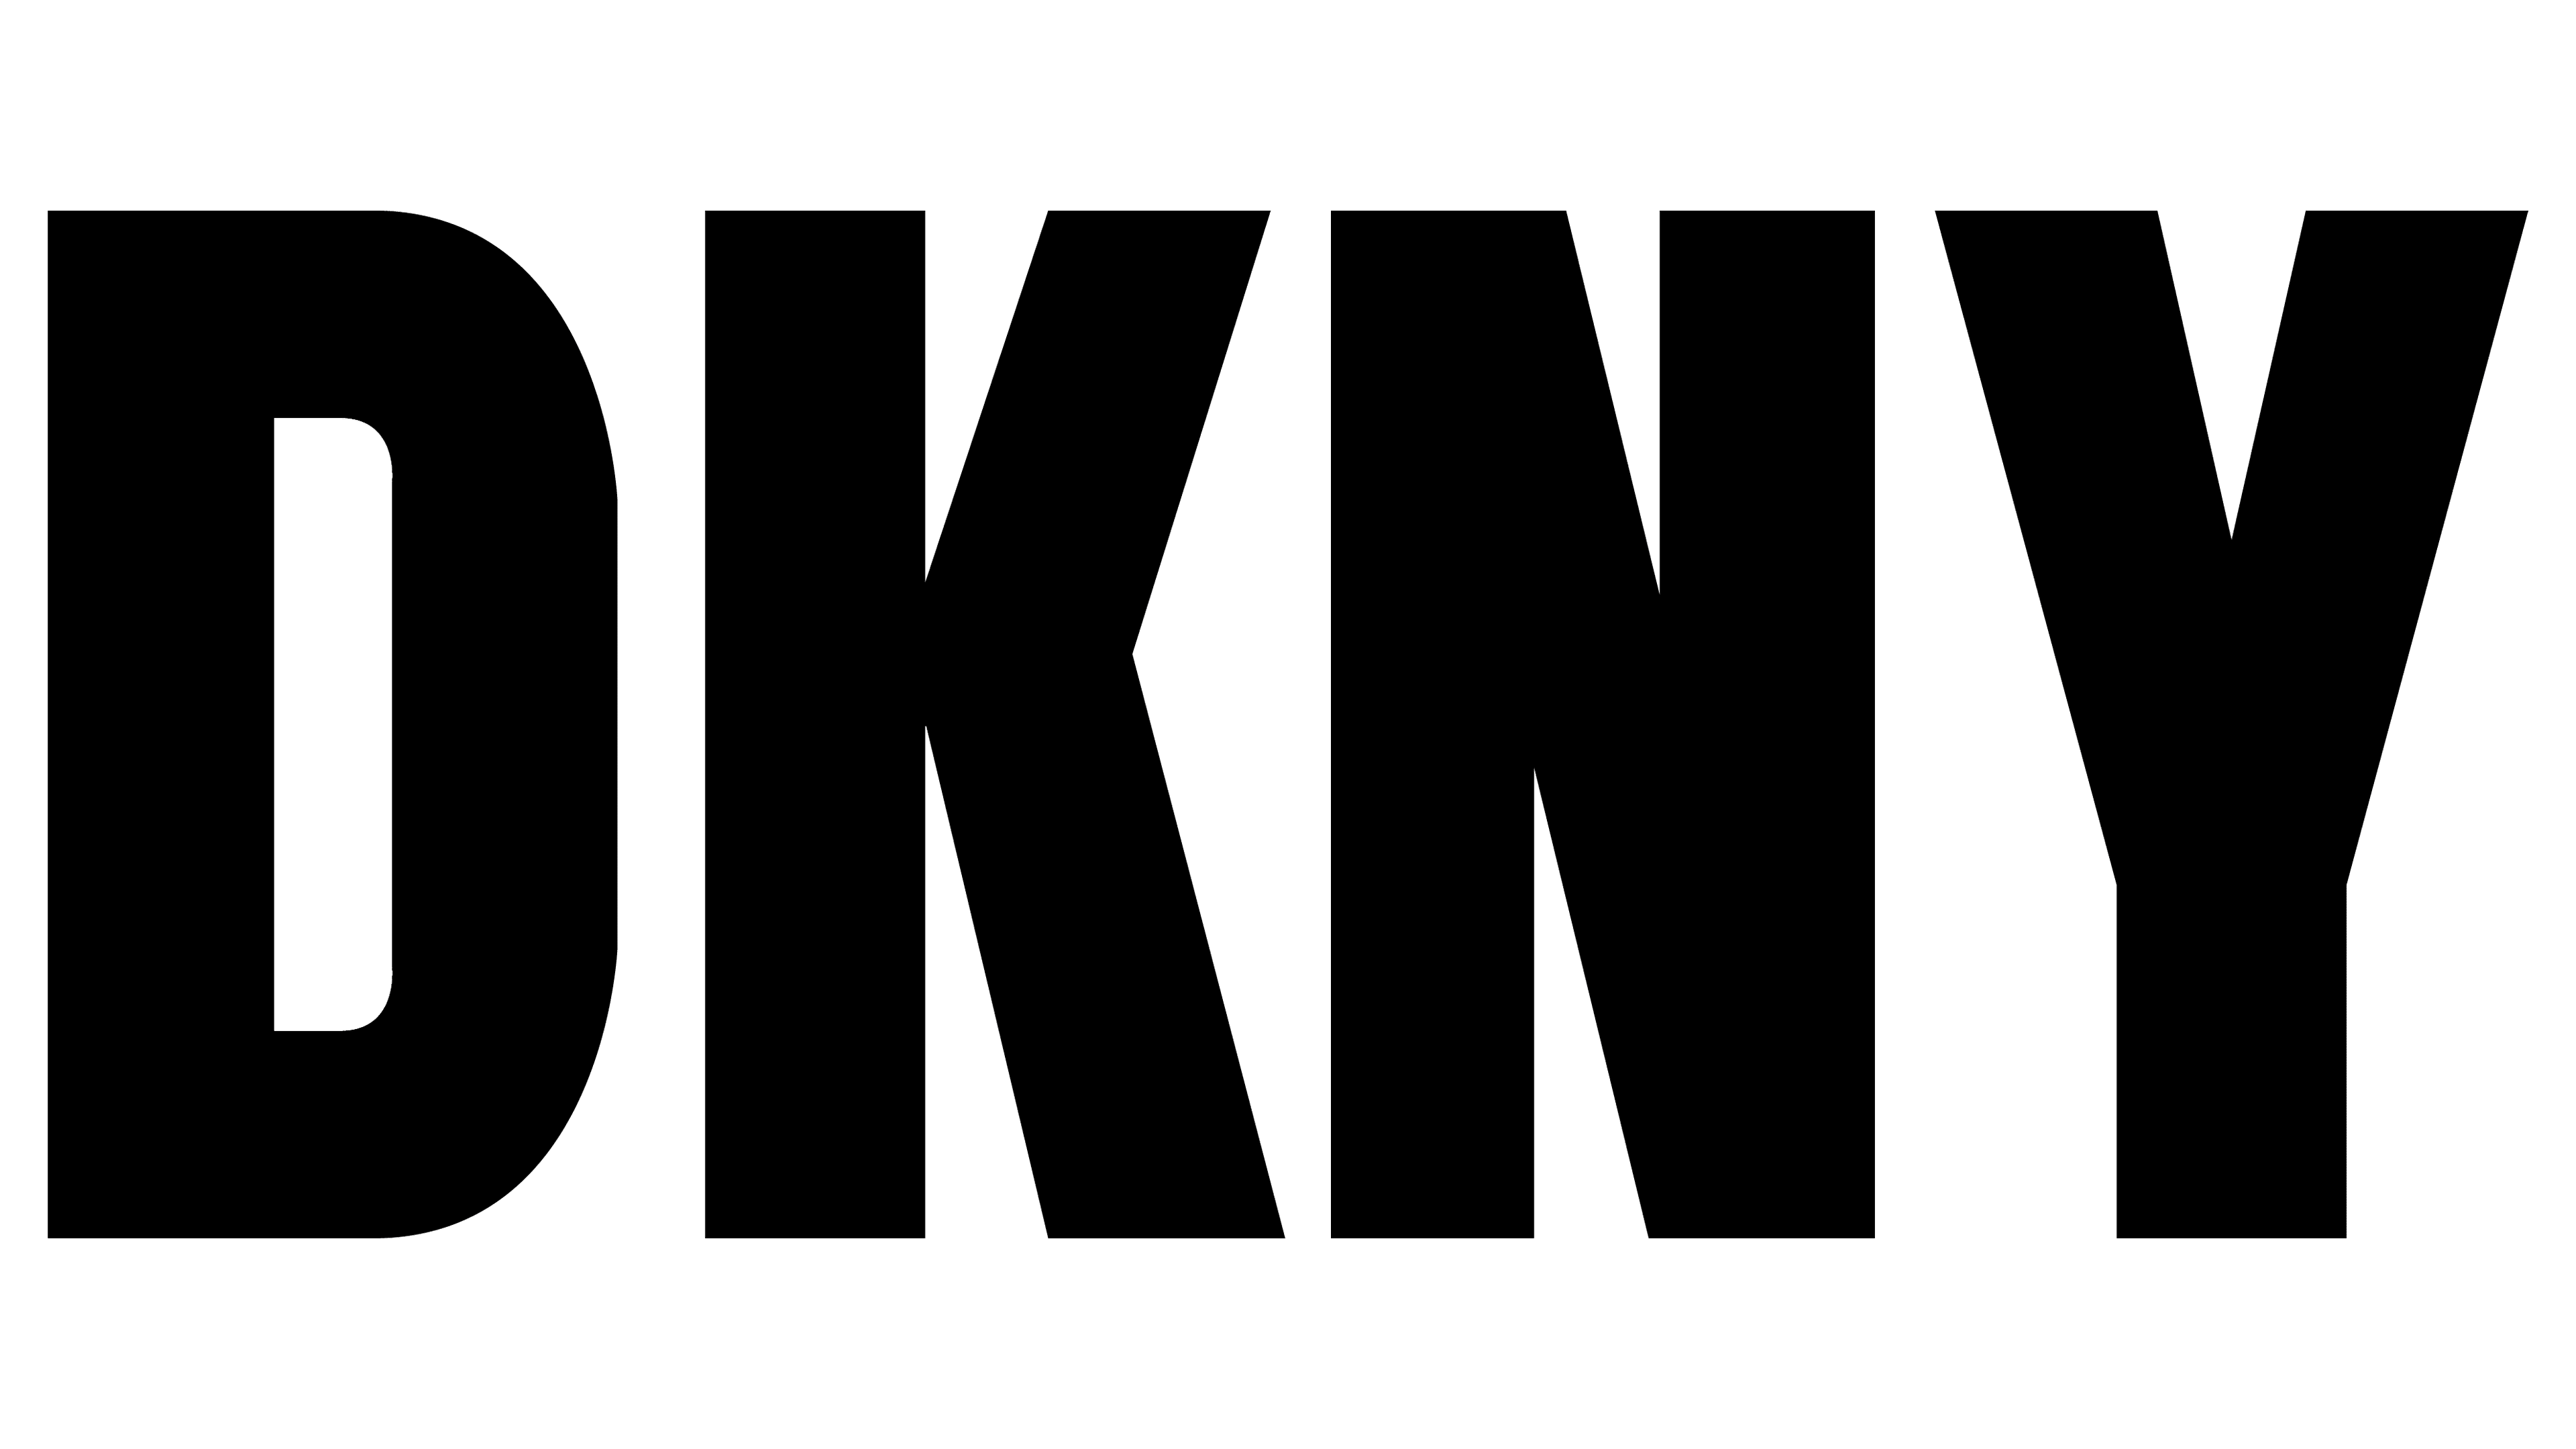 Dkny Logos  Dkny, Logos, New york logo